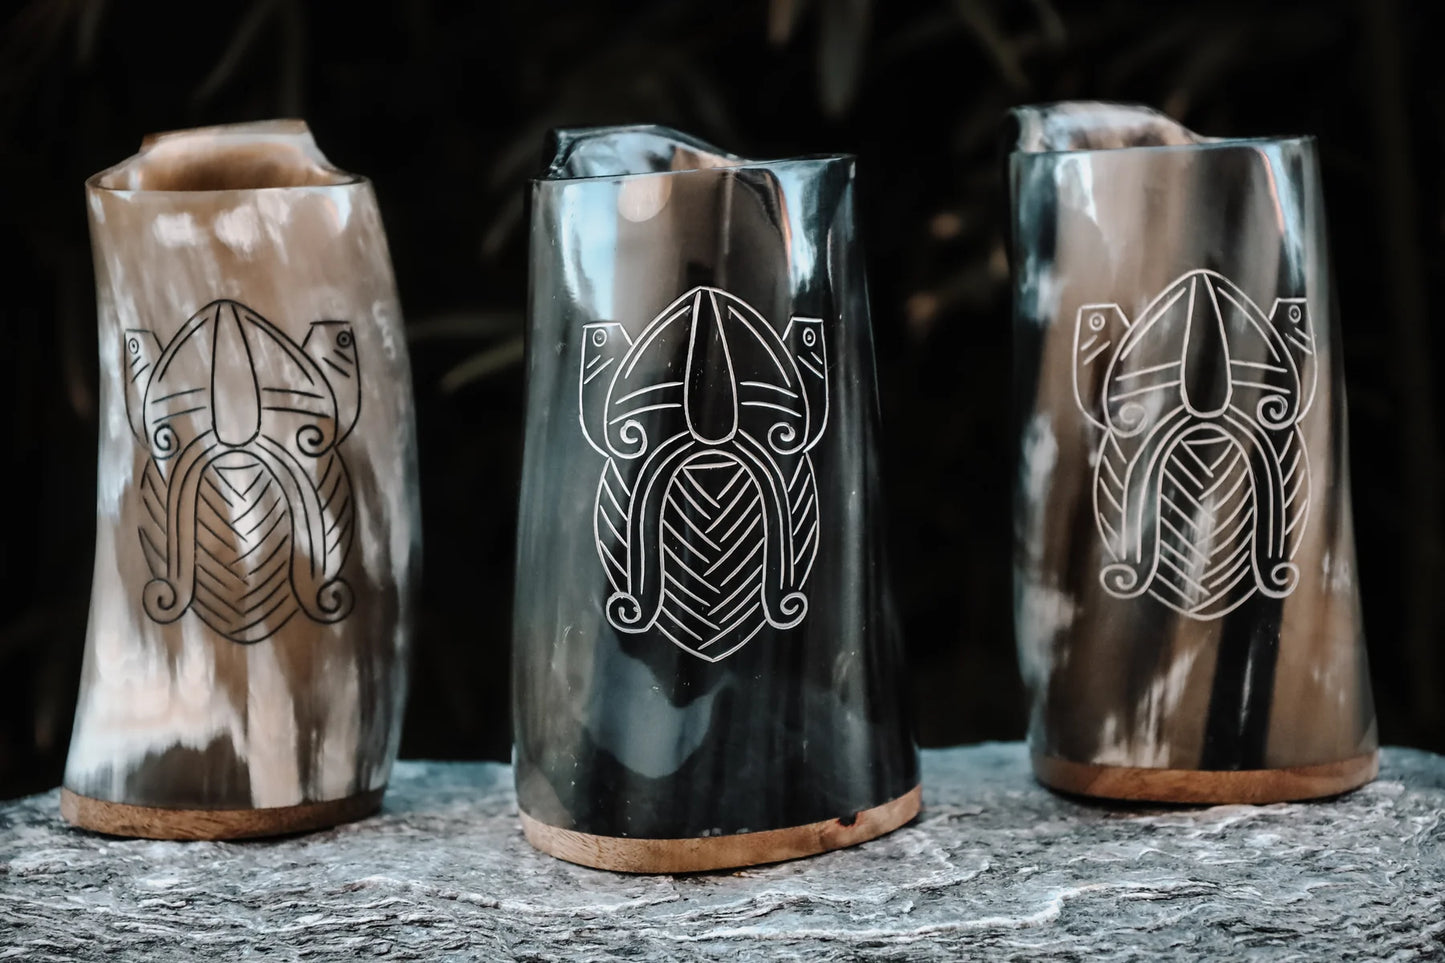 Odin's Battle horn mug